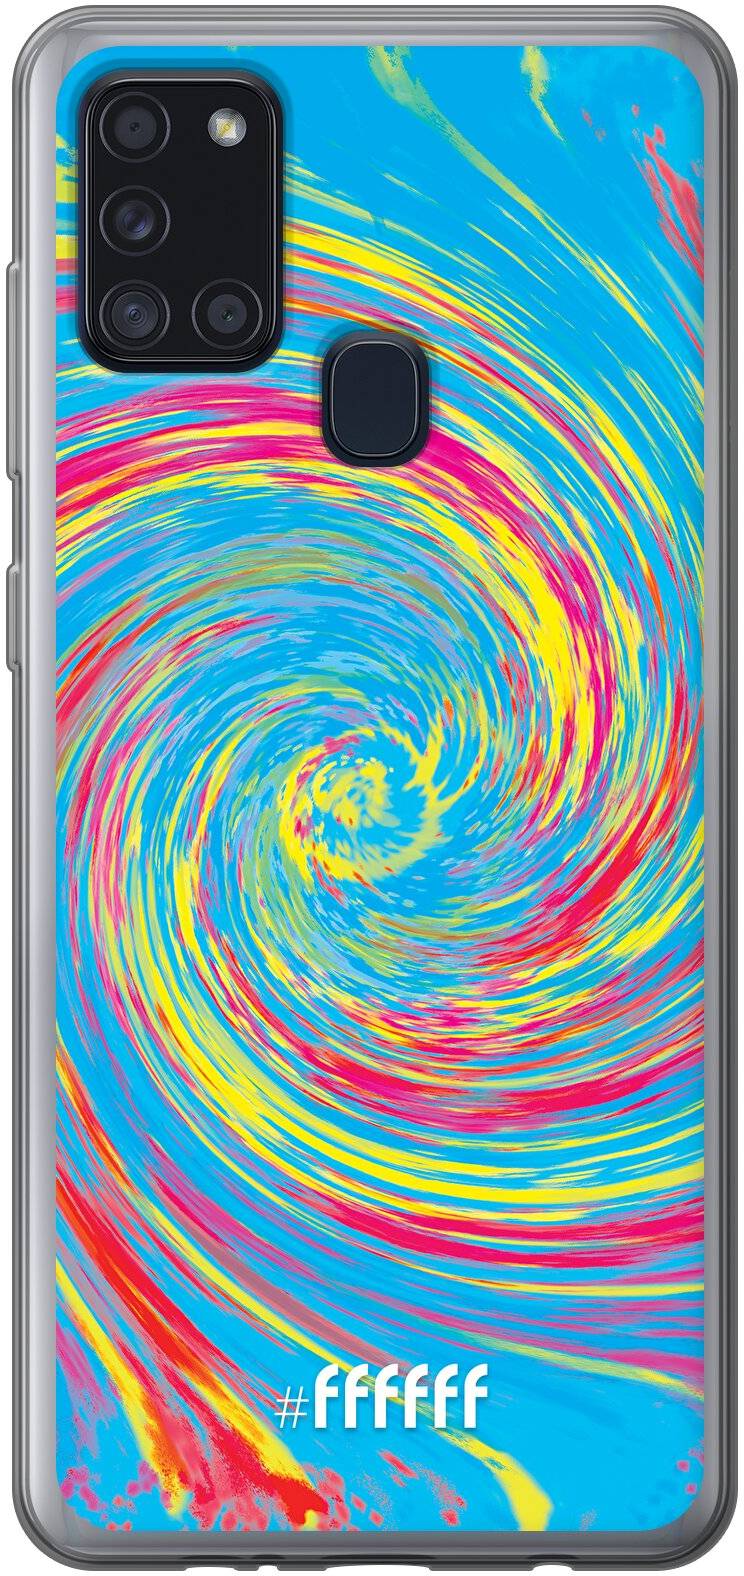 Swirl Tie Dye Galaxy A21s